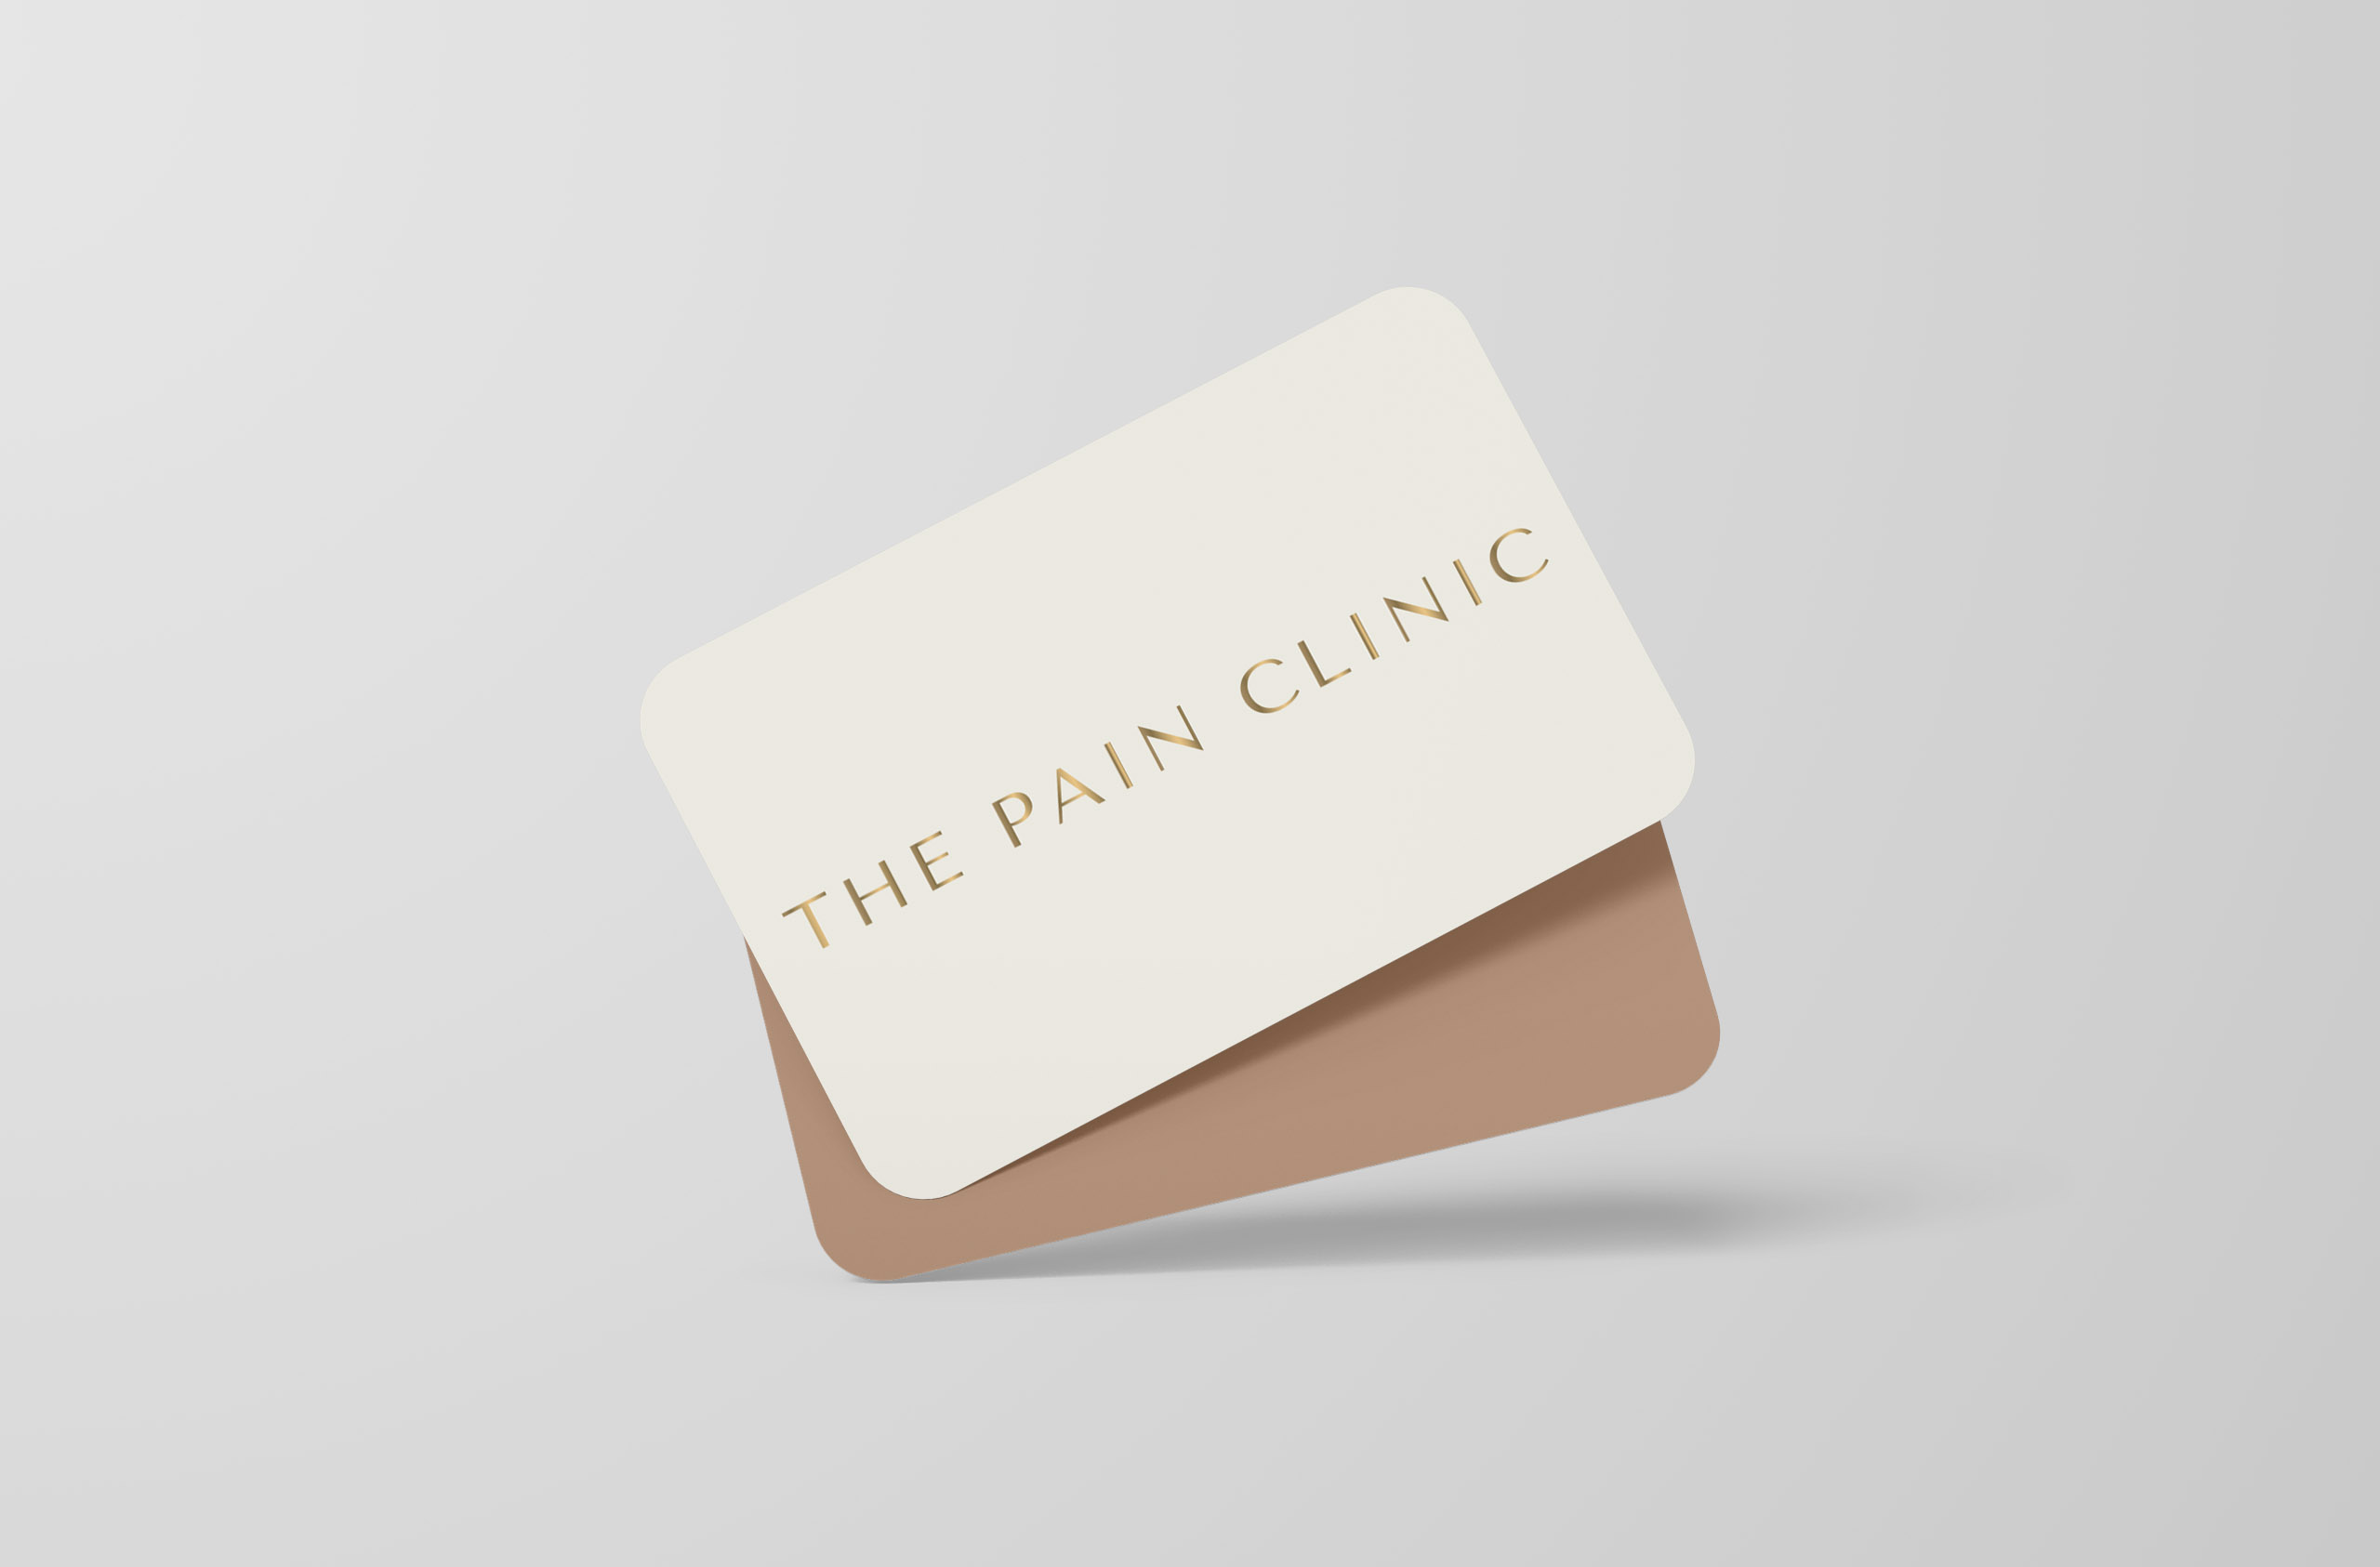 the-pain-clinic-identyfikacja3-min